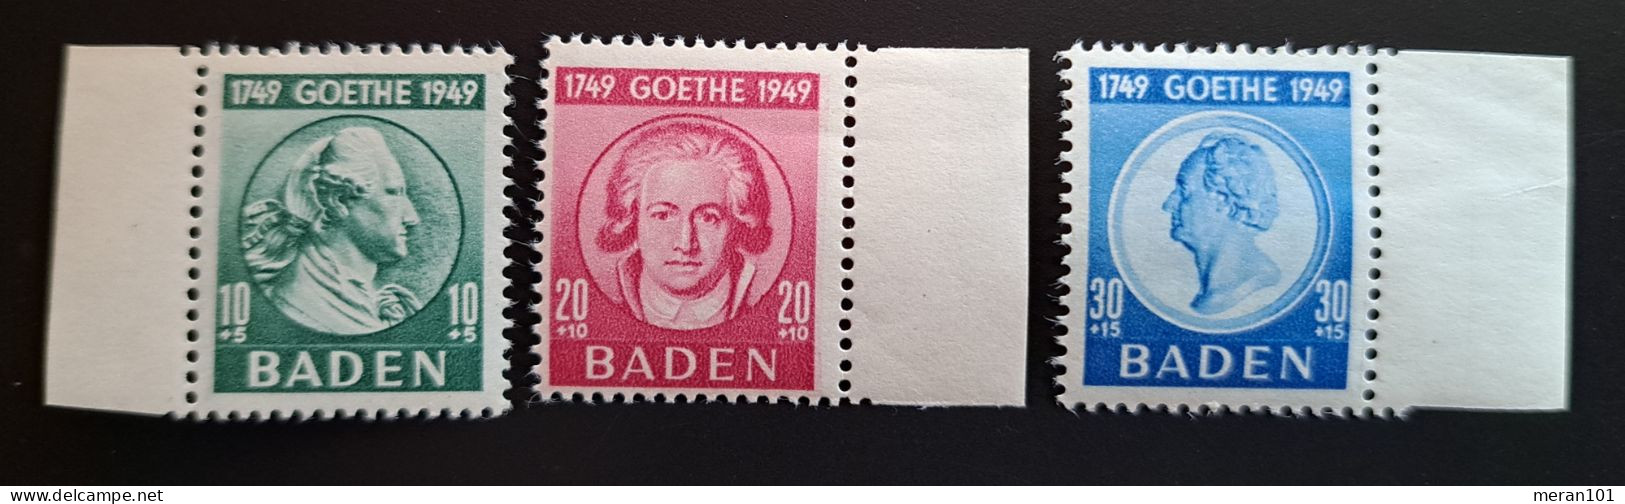 Baden Mi 47-49 MNH(postfrisch) Goethe - Baden